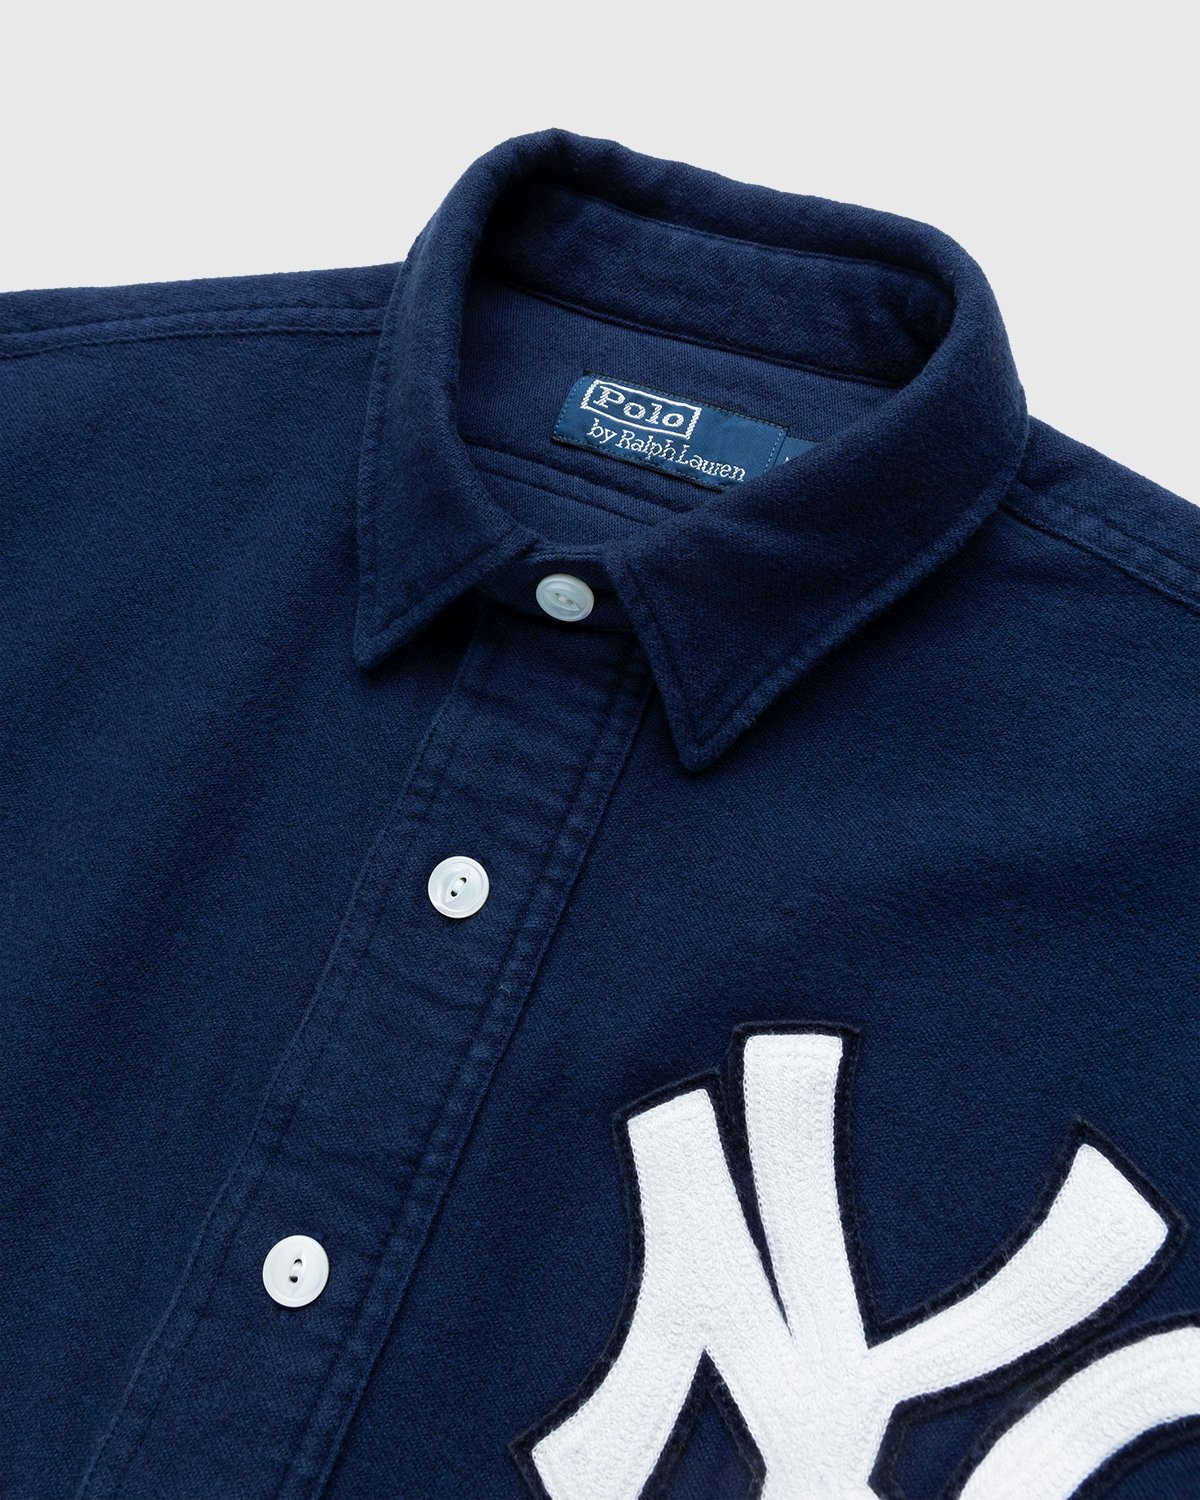 Ralph Lauren – Yankees Popover Shirt Navy